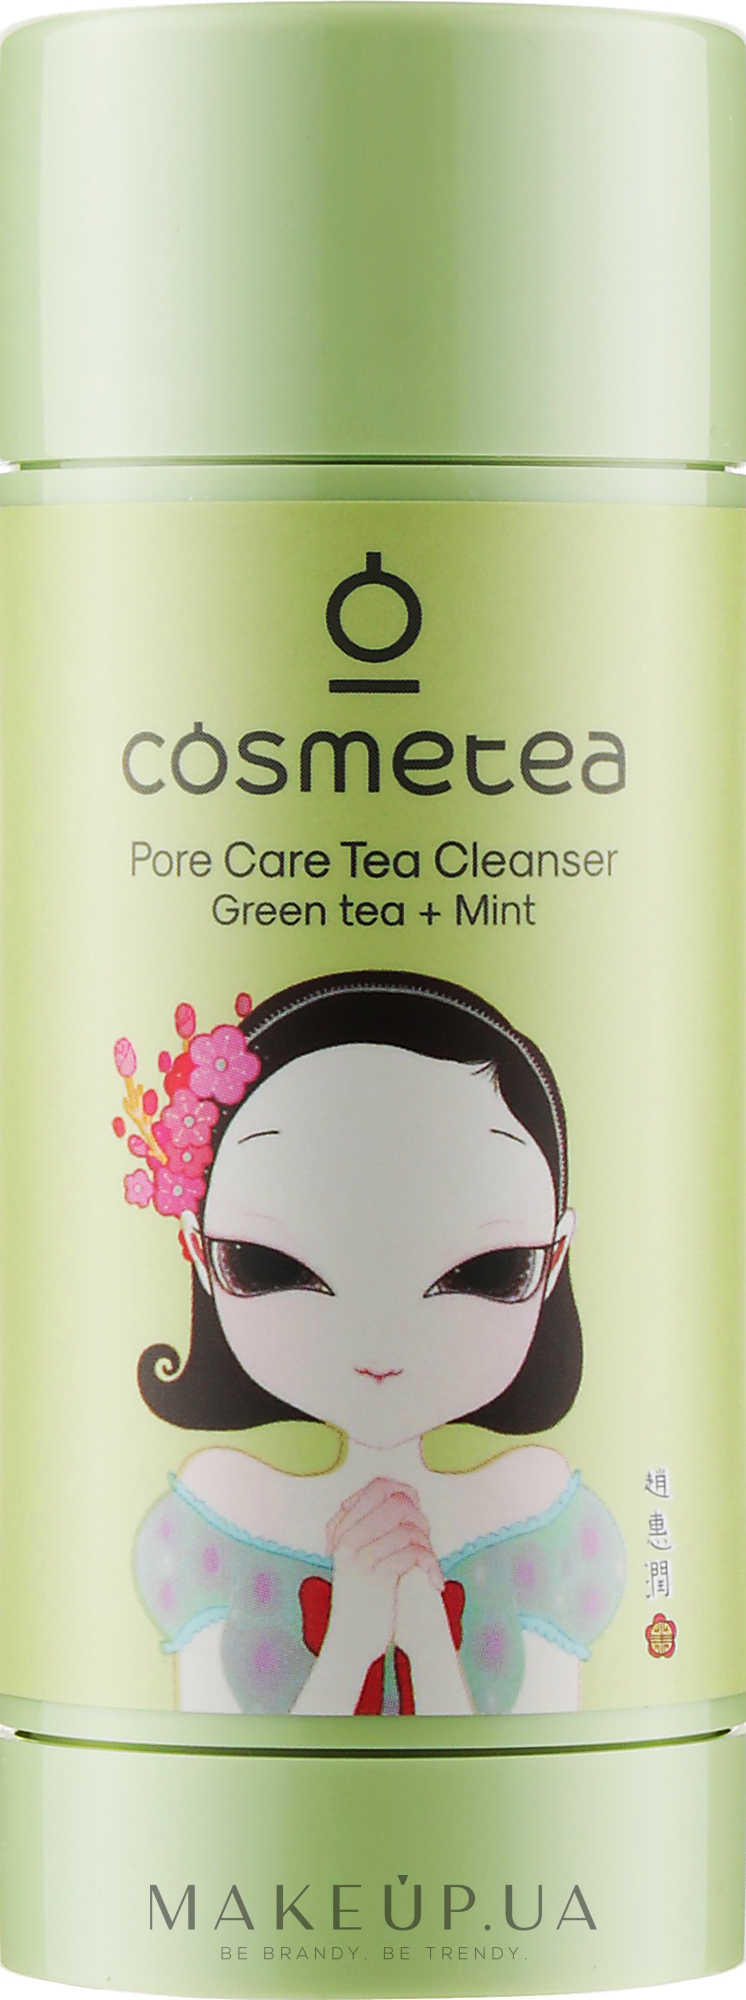 Стики для тела. Cosmetea Pore Care Tea Cleanser. Cosmetea. Bring Green Pore Cleanser. Cosmetea корейская косметика купить.